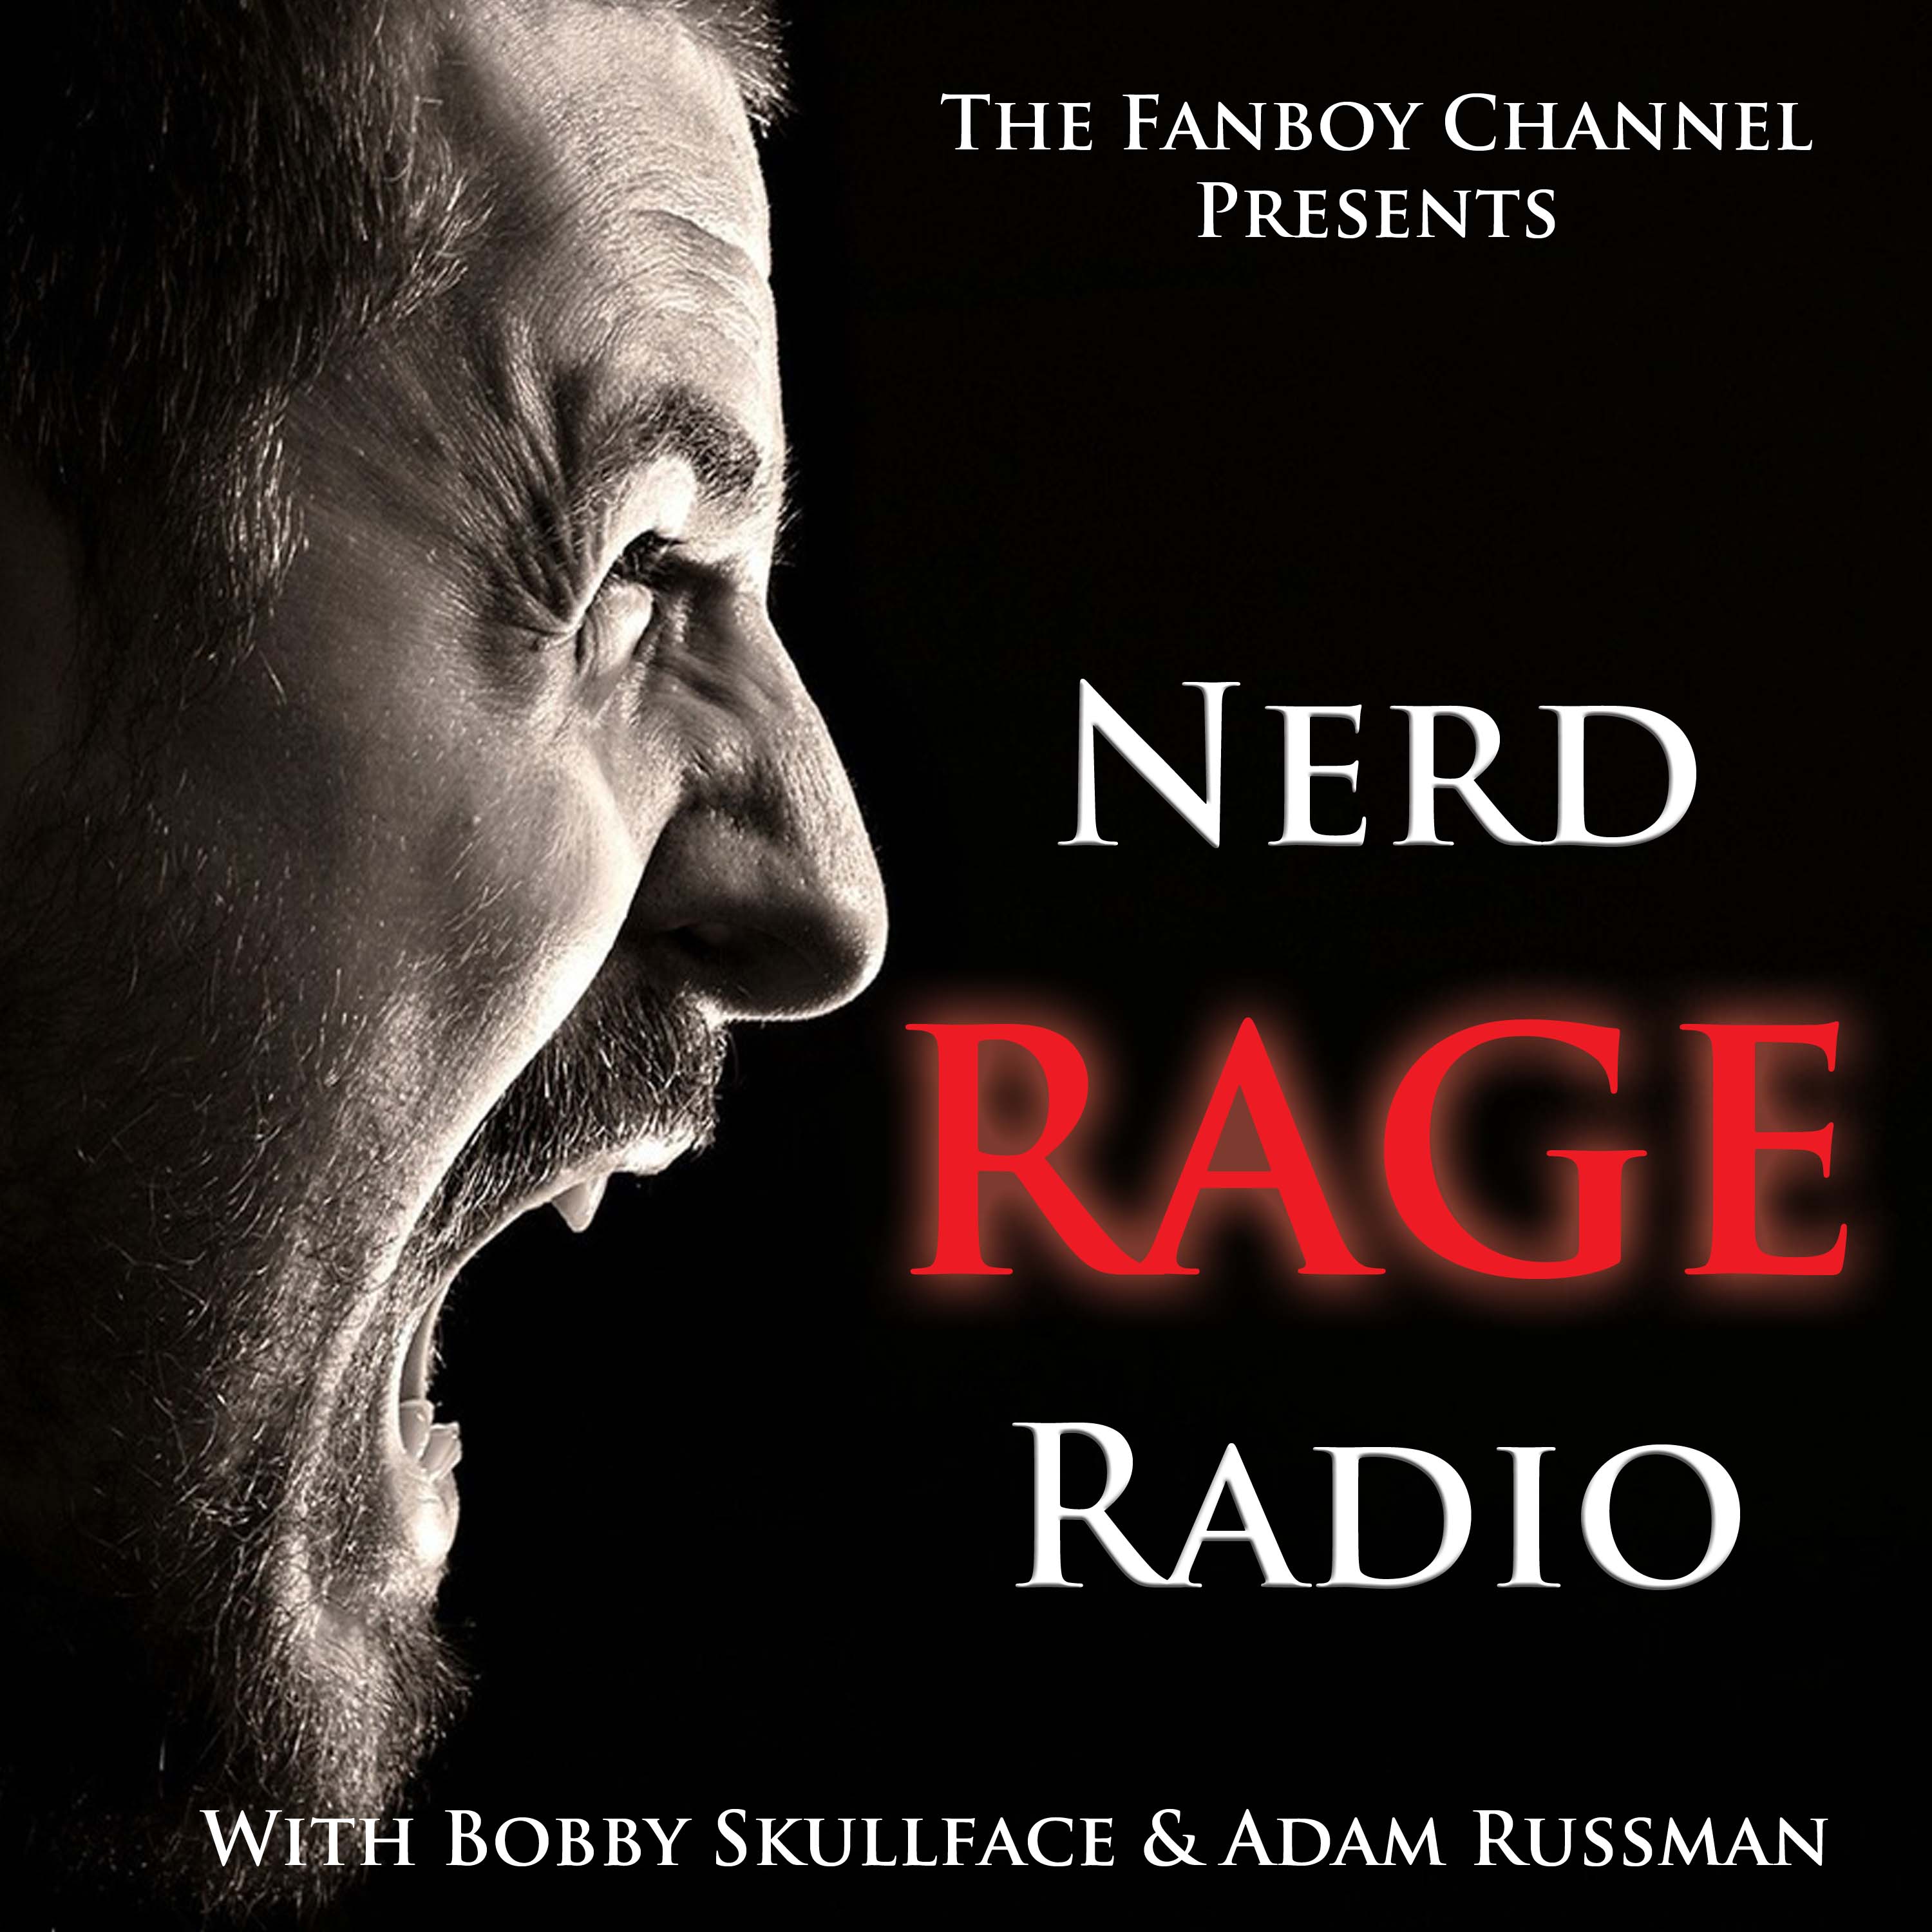 SDCC 2016 Review Nerd Rage Radio Style!